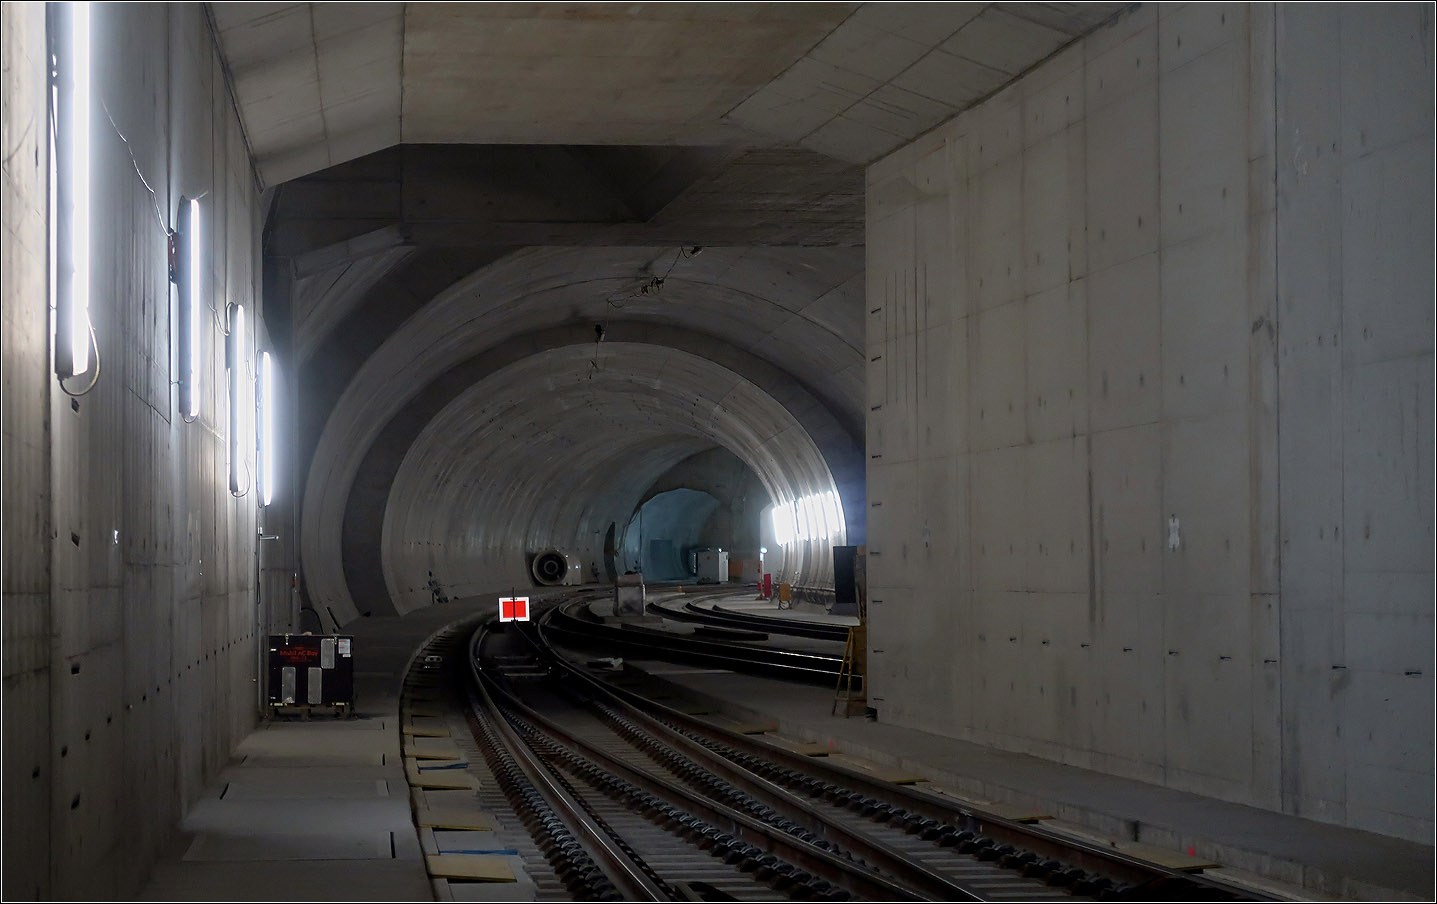 Im Gleisvorfeld des Nordkopfes - 

... des zukünftigen Stuttgarter Hauptbahnhofes. Hier geht der Blick in die andere Richtung in den Tunnel nach Feuerbach. Die beiden Gleise vereinigen sich und rechts in Bildmitte ist zudem das Gleis in Fahrtrichtung Bad Cannstatt zu sehen. Weiter hinten teilt sich der Tunnel in zwei Einzelröhren nach Feuerbach bzw. Bad Cannstatt. Die Tunnels sollen auch von Straßenfahrzeugen (z. B. Feuerwehr) befahren werden können. Dazu werden die Bereiche zwischen den Schienen noch flächig abgedeckt. Der Fotostandpunkt befindet sich auf der Rettungszufahrt die über einen eigenen Tunnel senkrecht auf den Gleisbereich zuführt.

10.04.2023 (M)